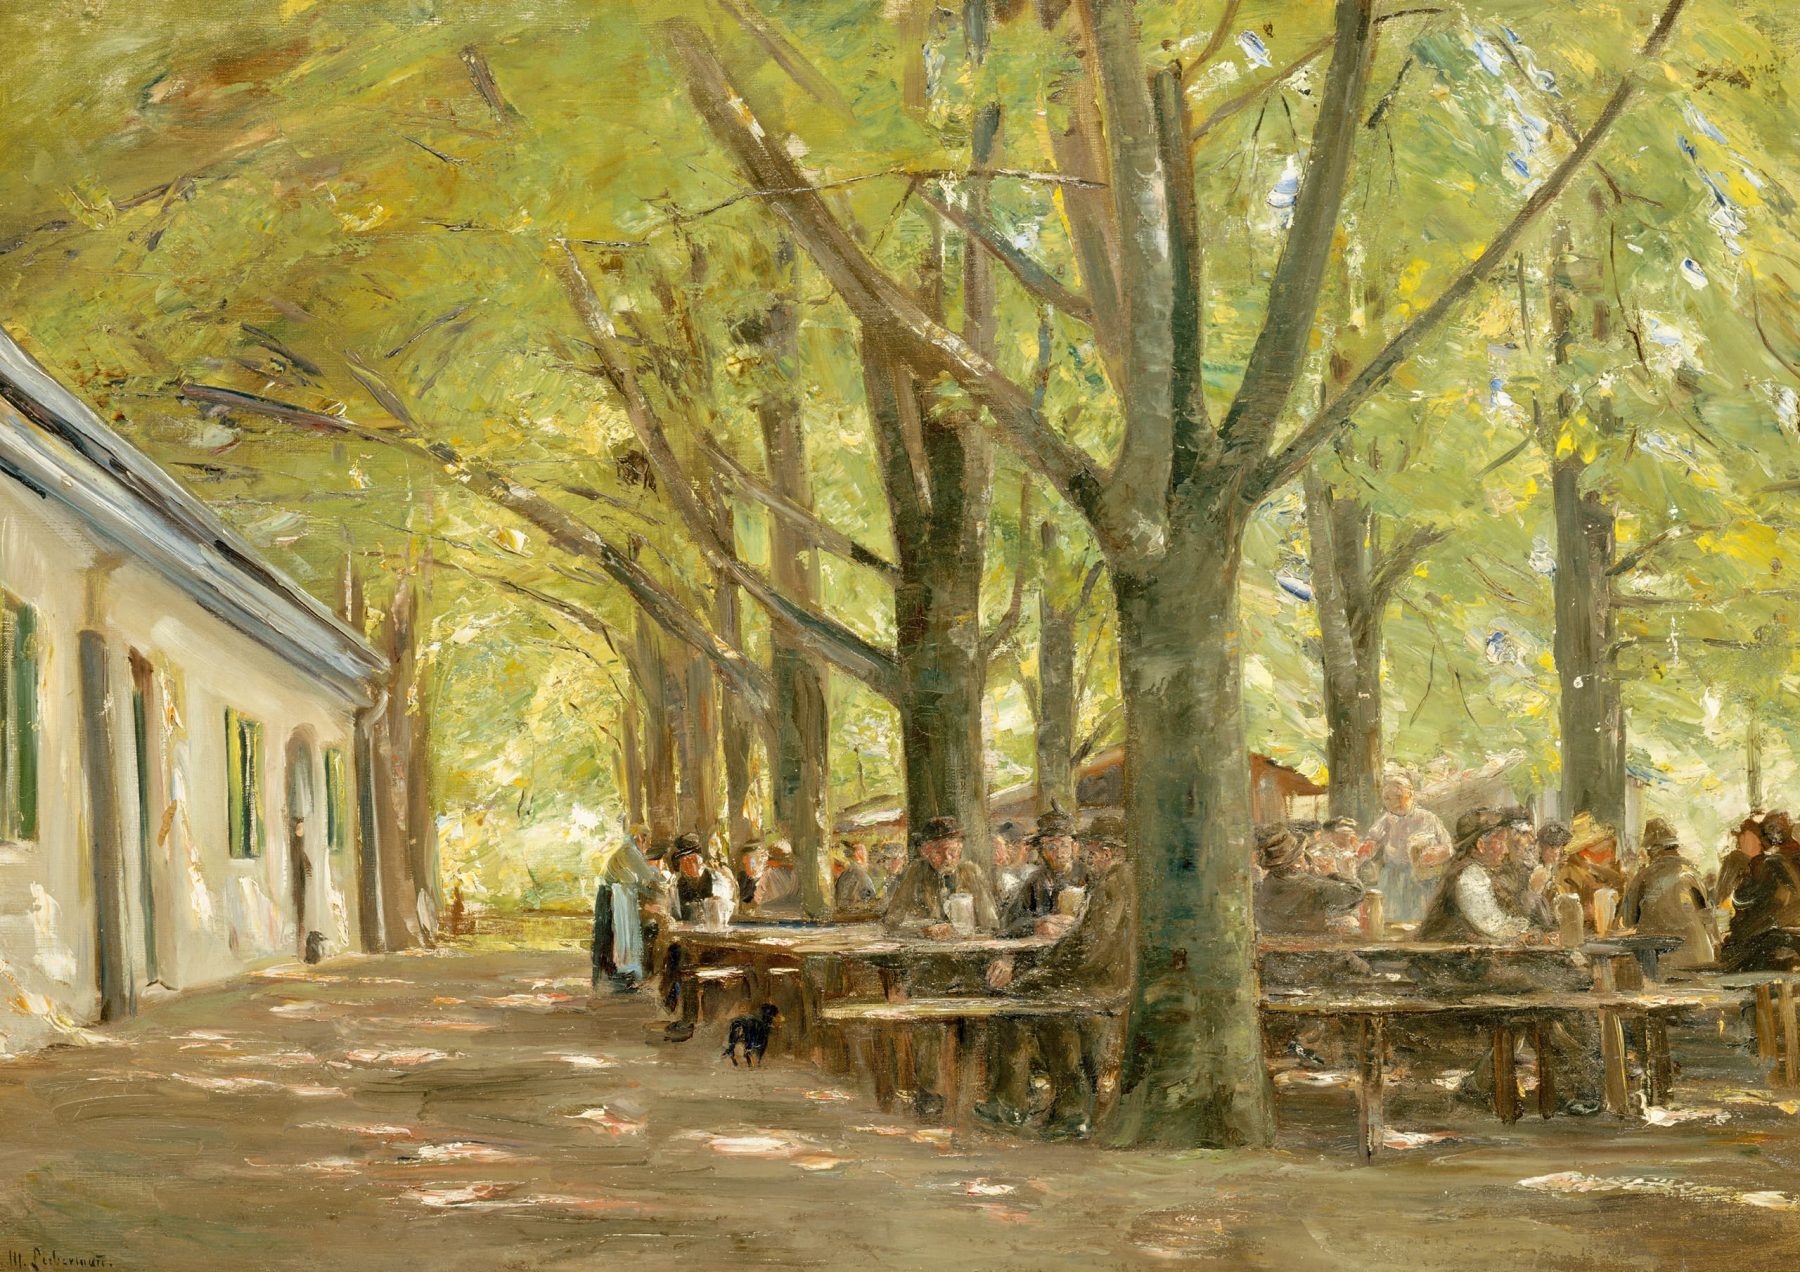 Gemäle eines Biergartens mit vielen Personen, die in Bierbänken unter Bäumen sitzen, links ein Gebäude.